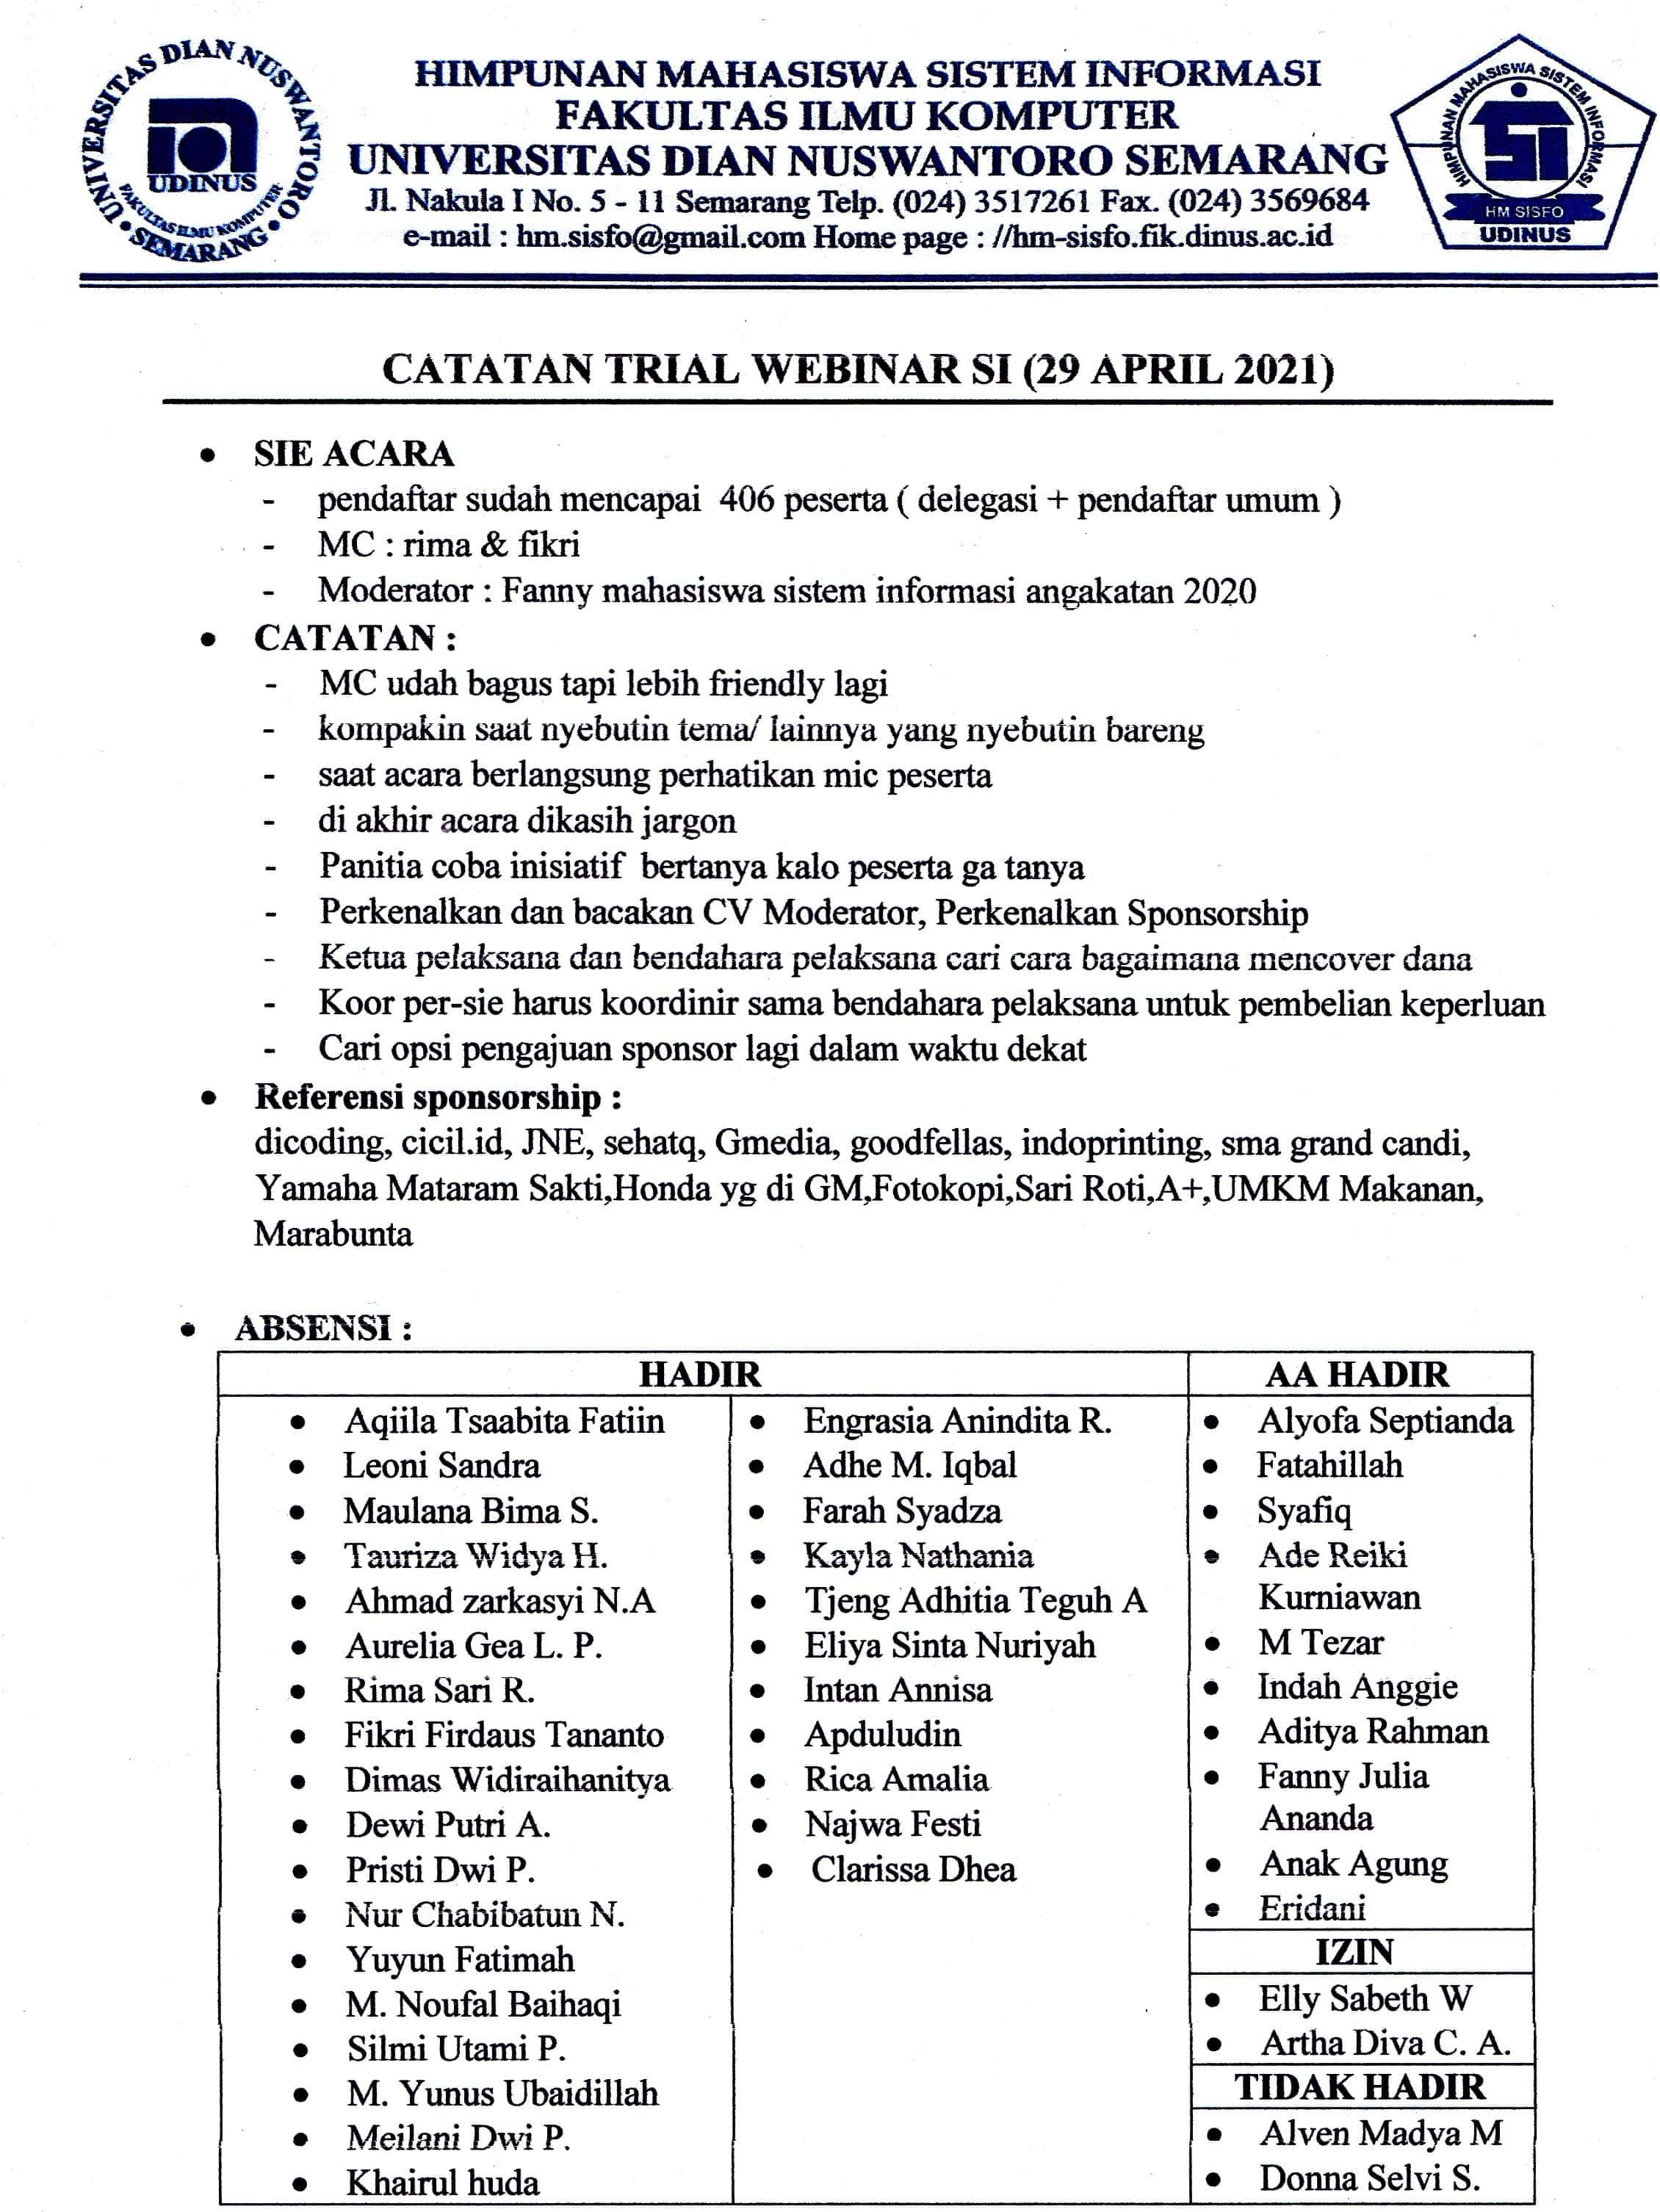 CATATAN TRIAL 1 (29 APRIL)